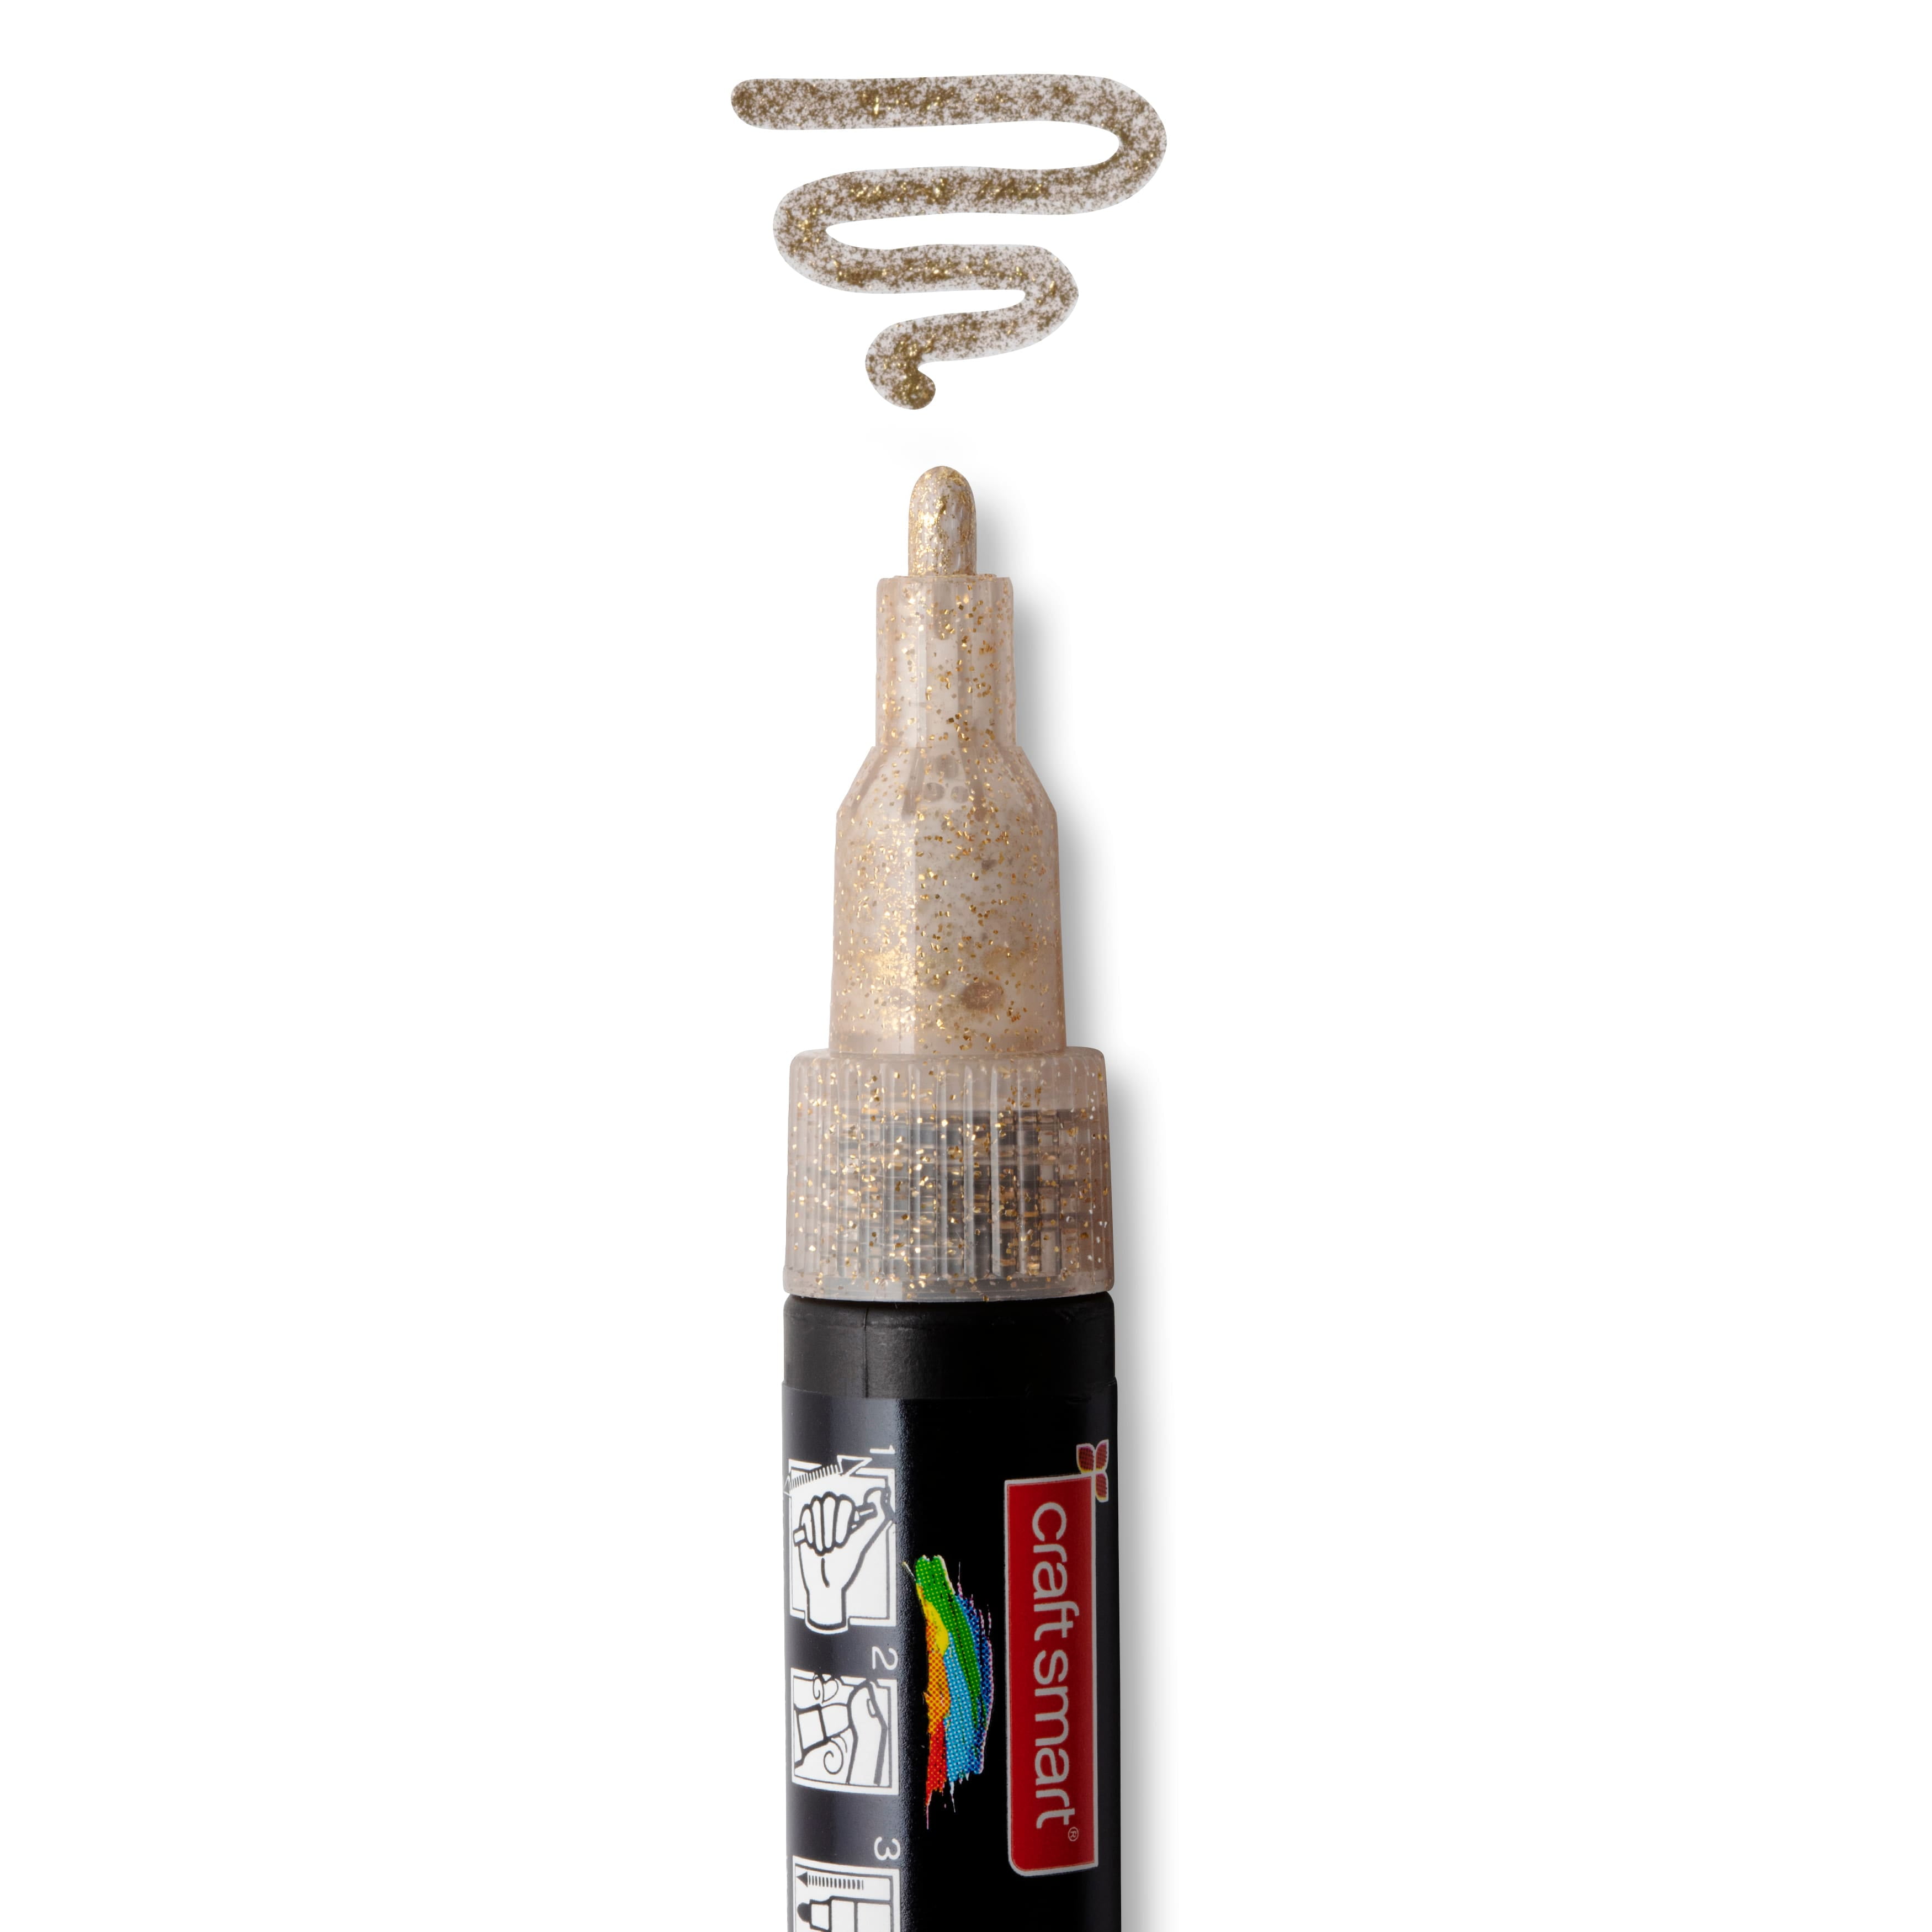 Craft Smart Glitter Tip Multi-Surface Premium Paint Pen - M (Medium)